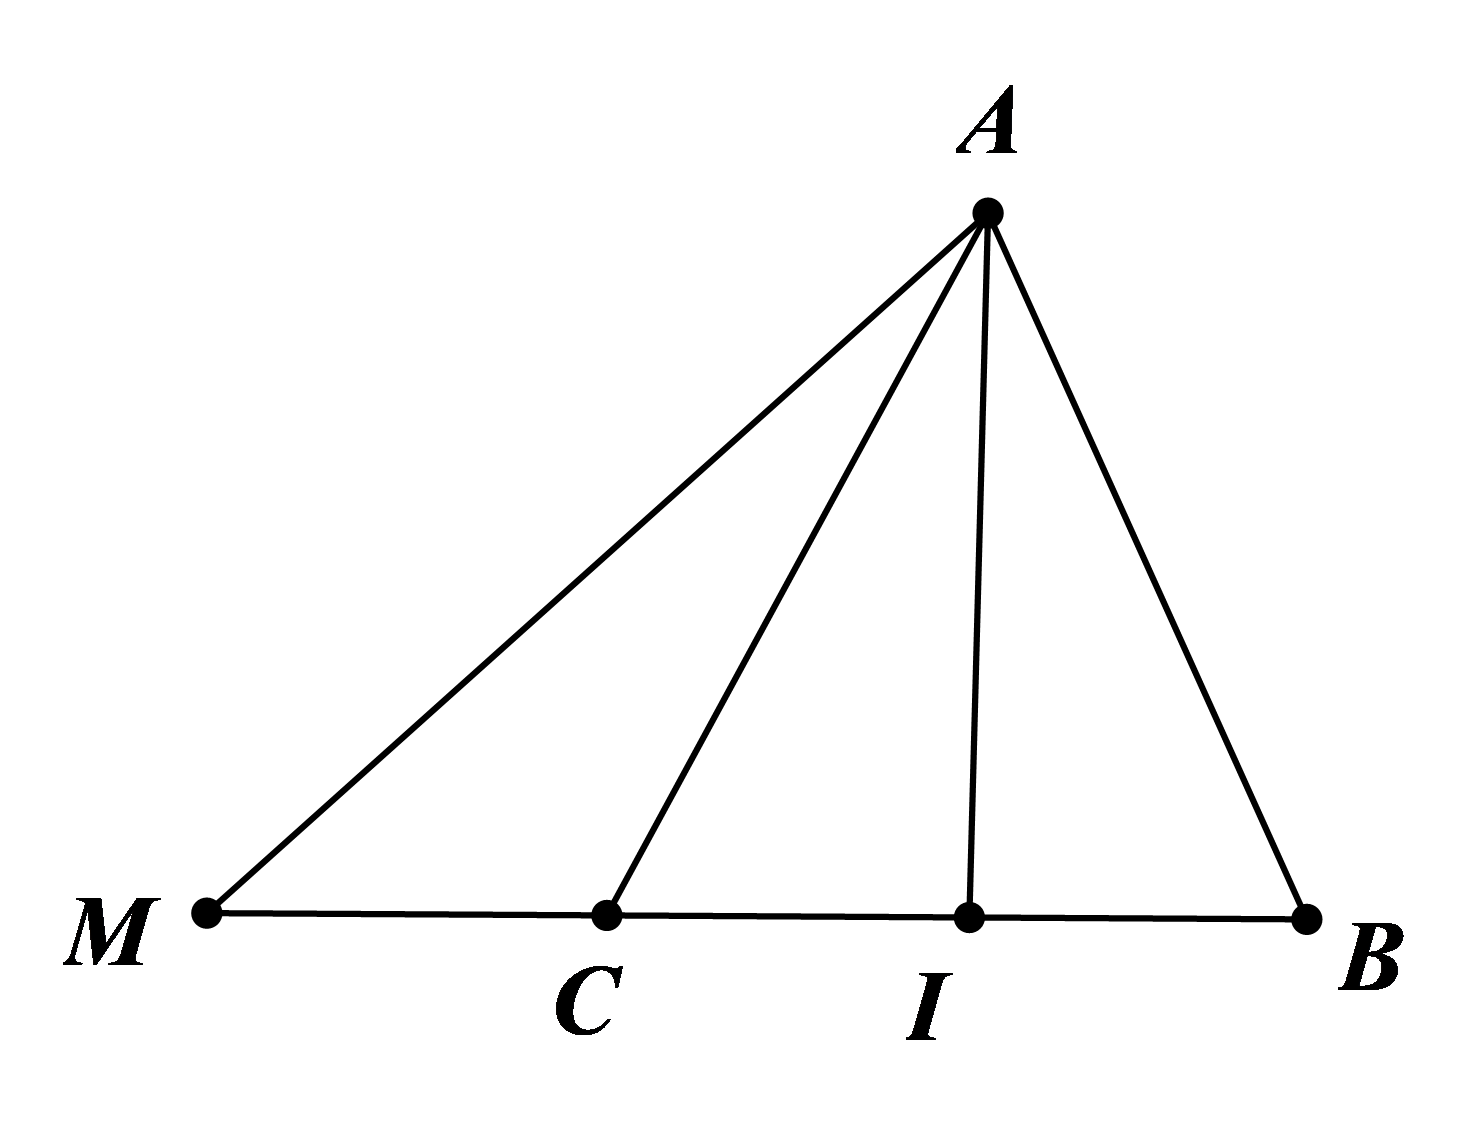 Hình minh họa Biểu thị một vectơ qua hai vectơ không cùng phương